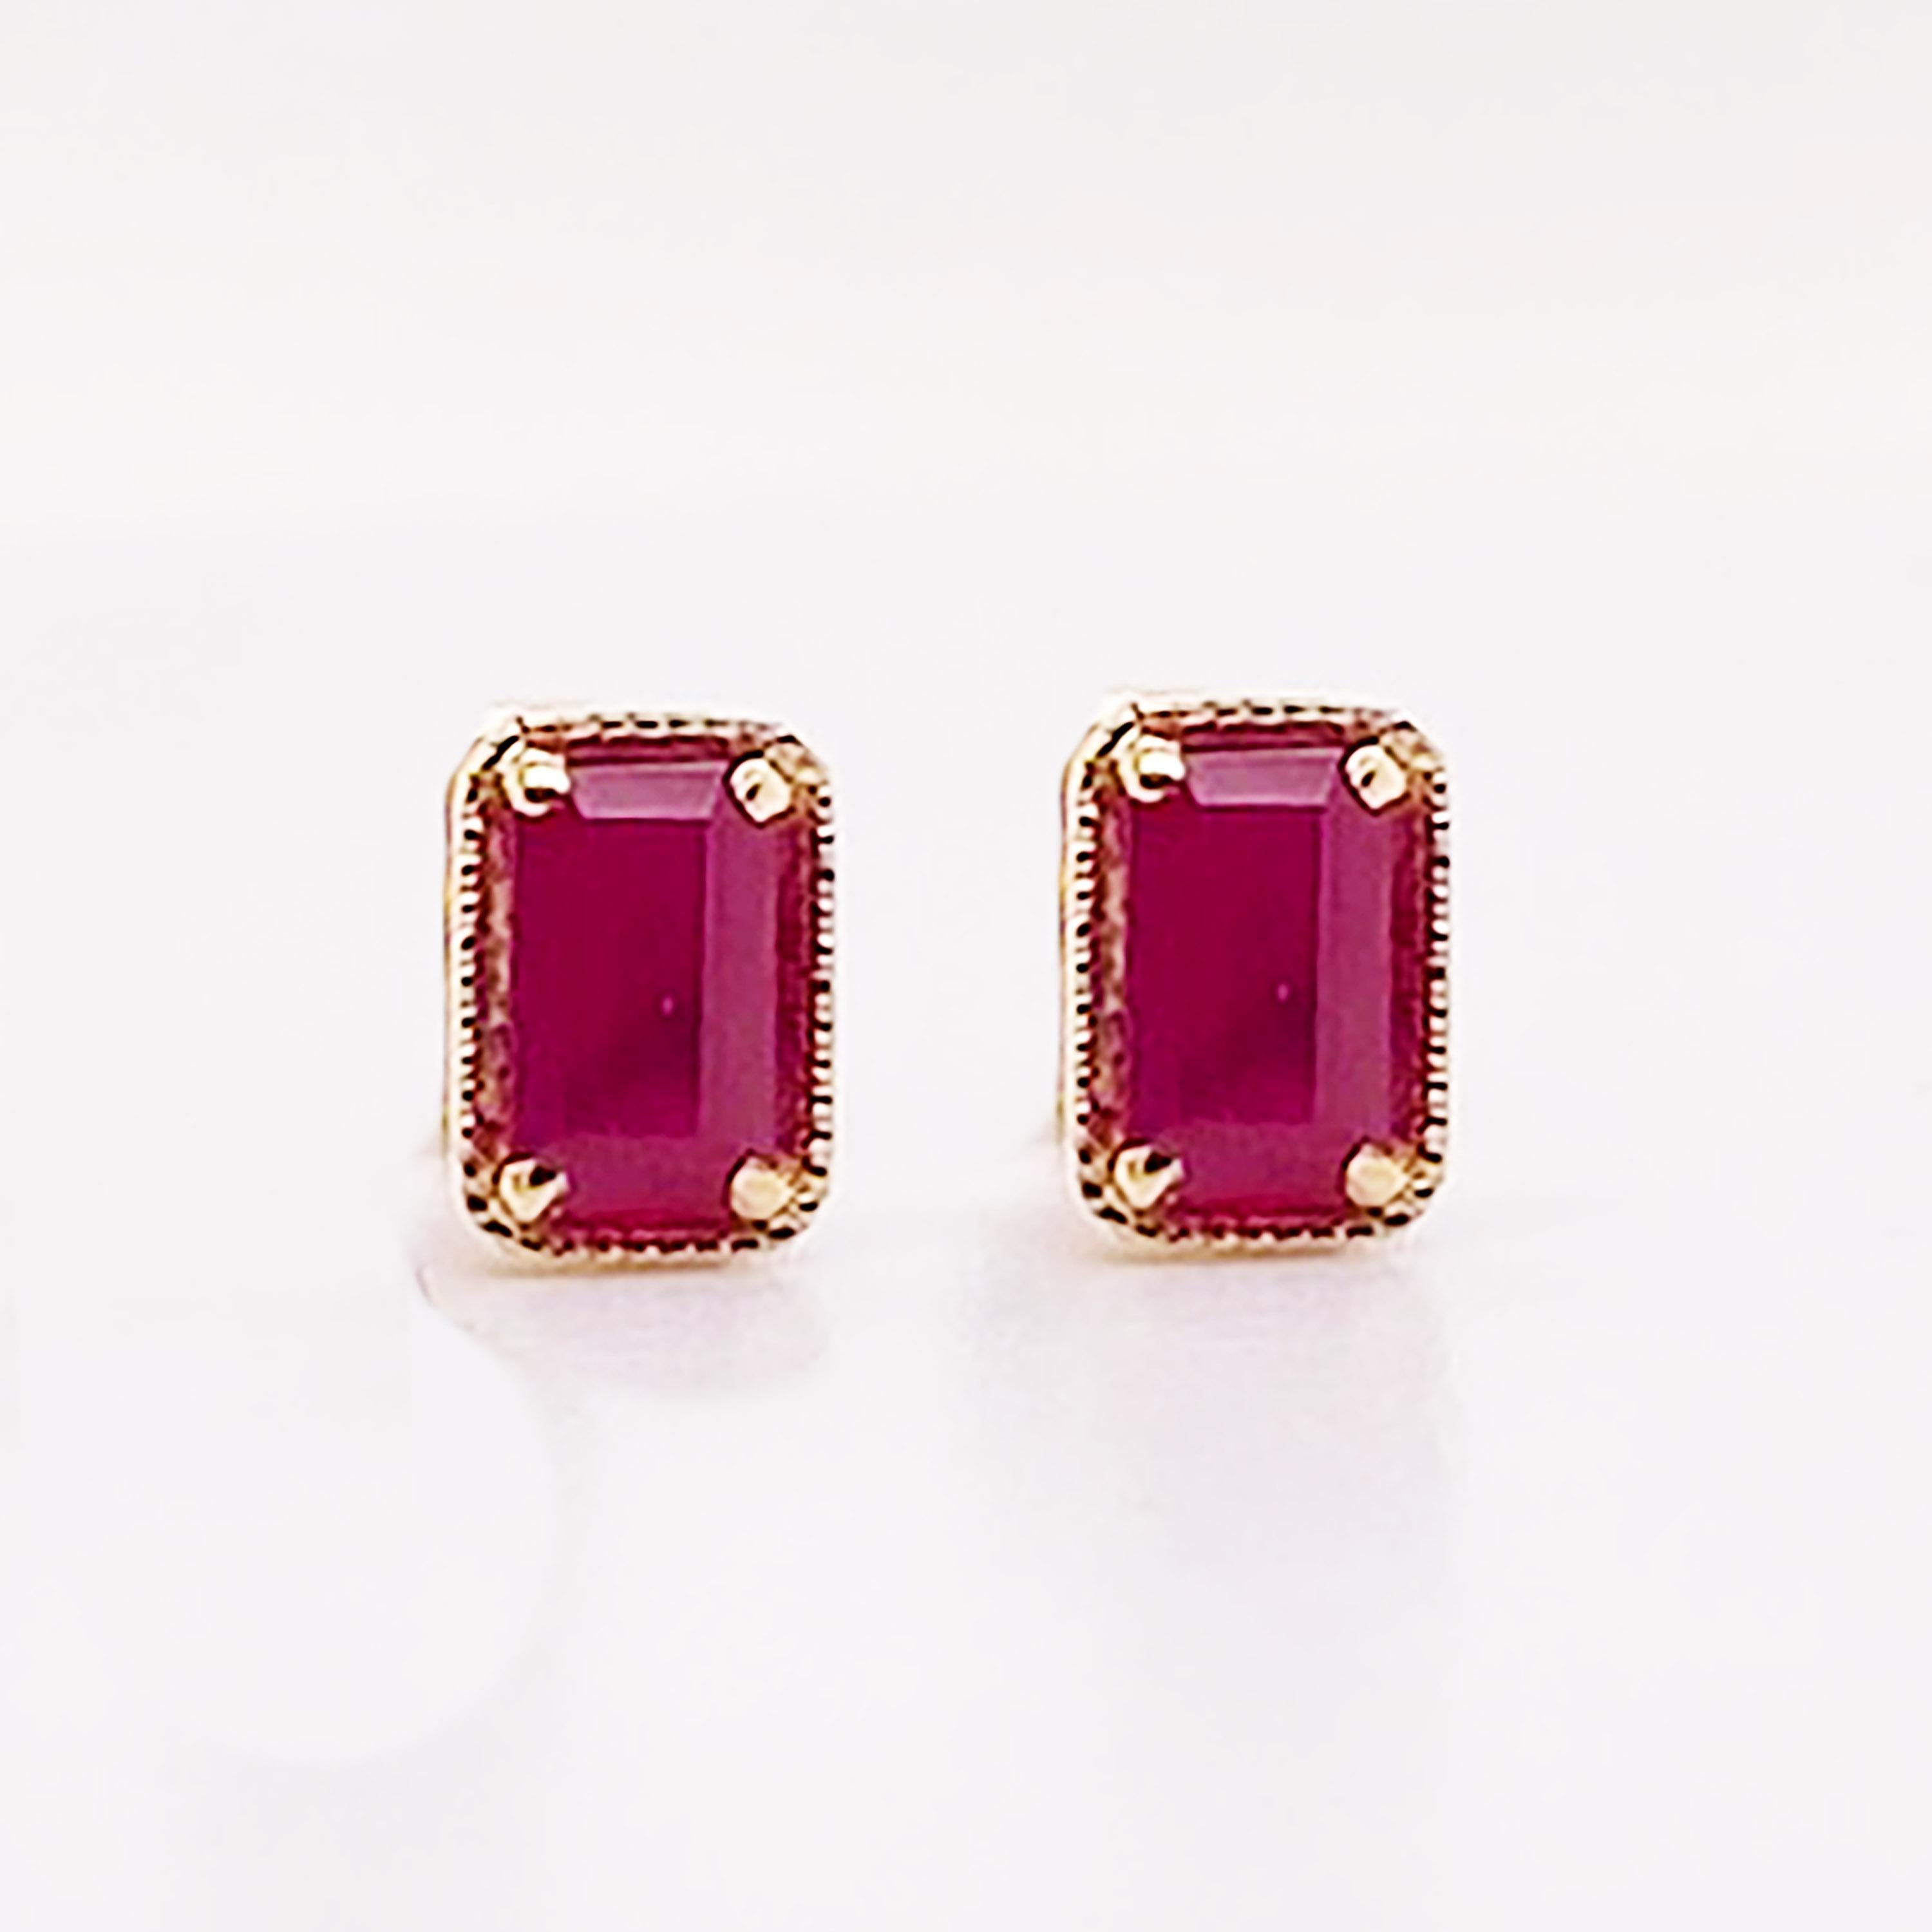 Modern Geometric Ruby Earrings 14K Gold .55 Carat Emerald Cut Ruby in Stud Style, July For Sale